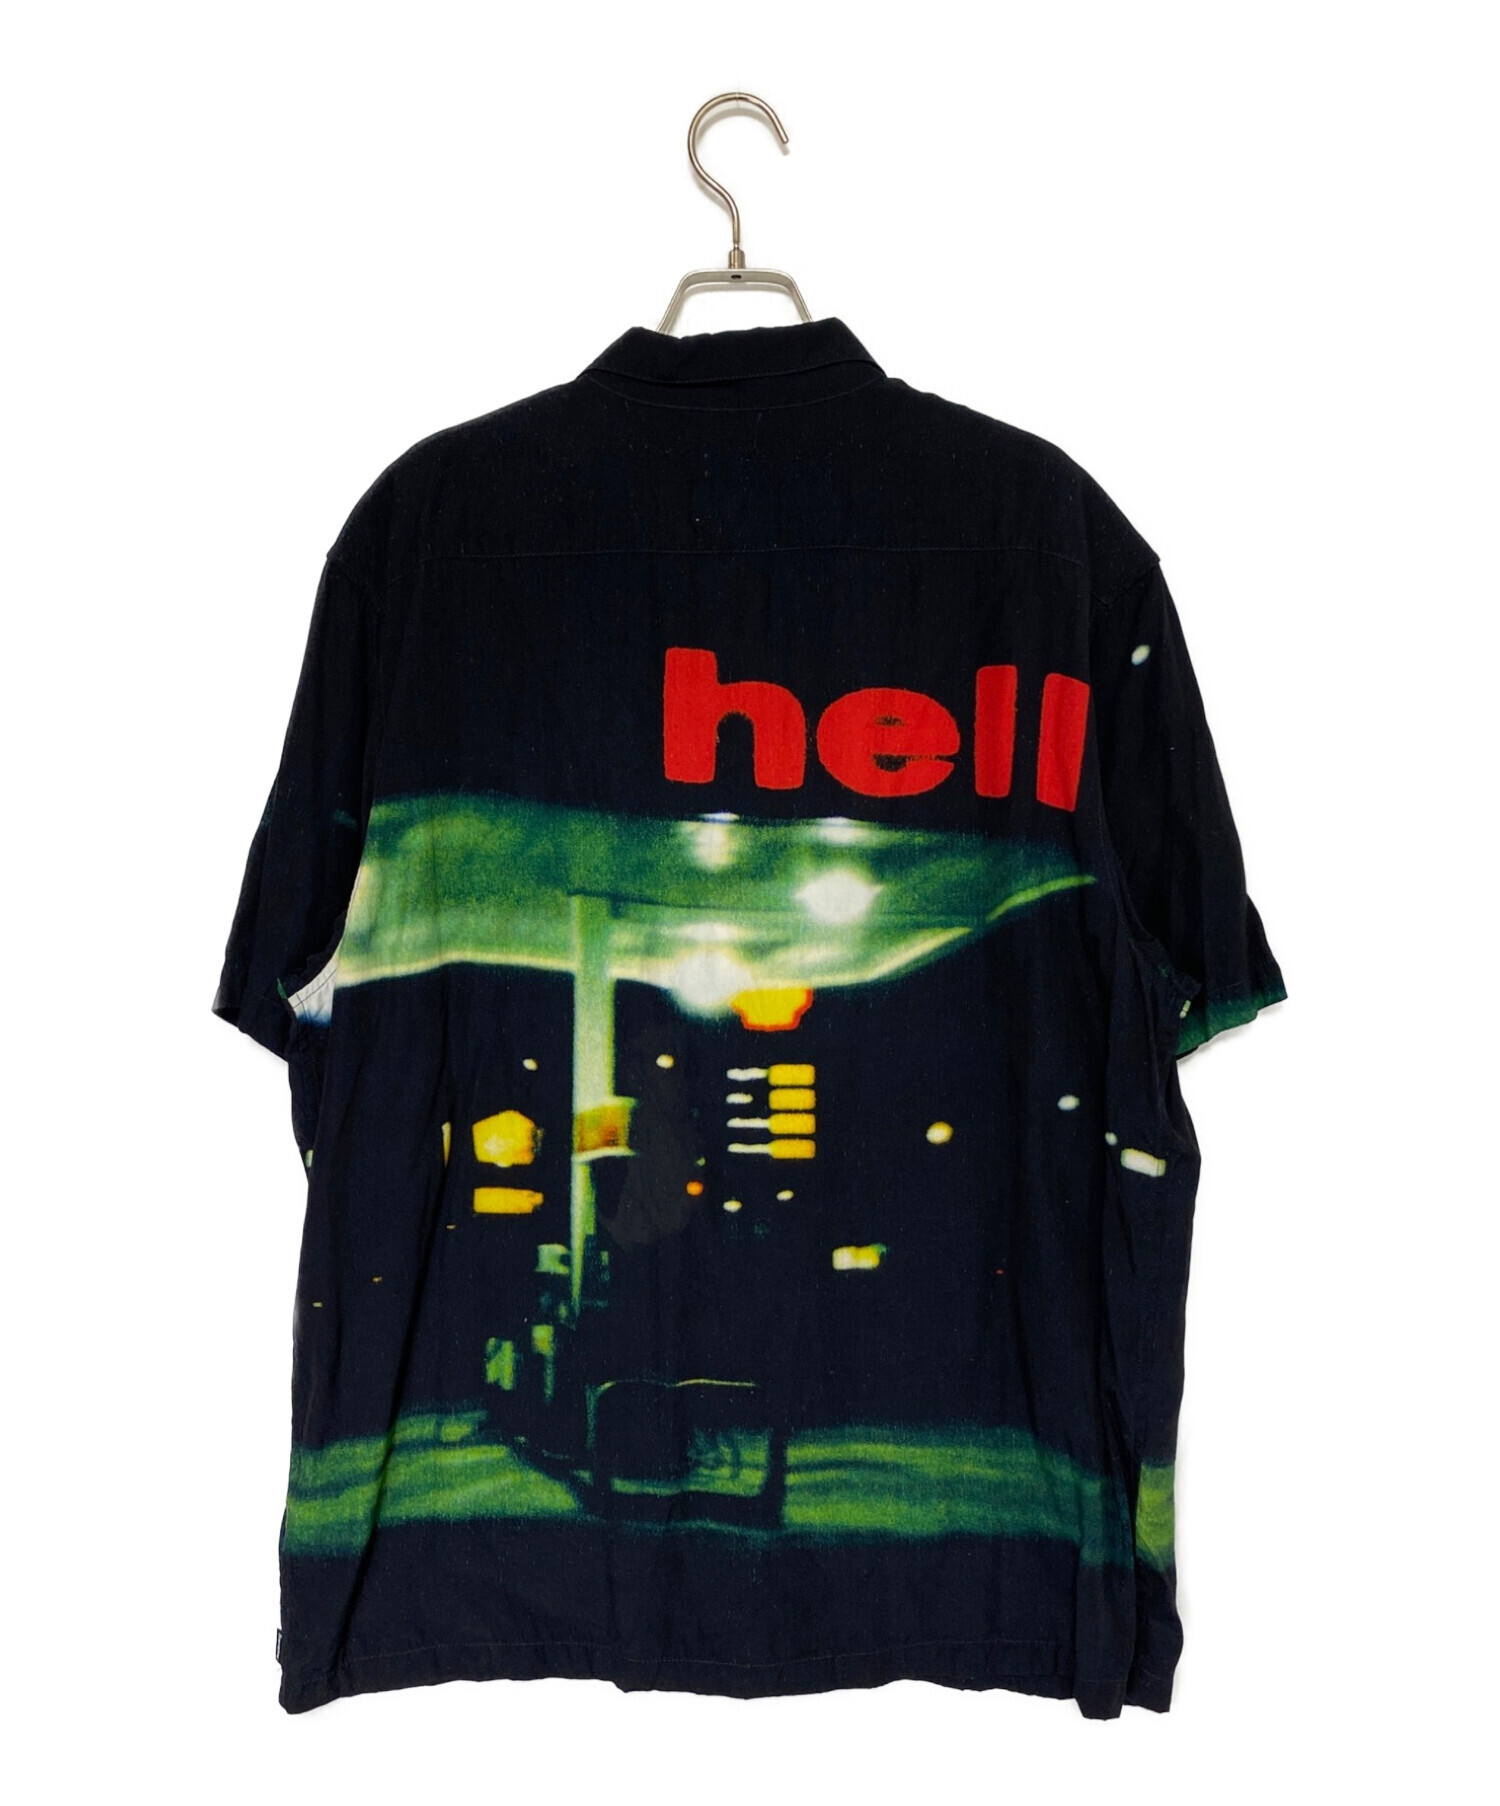 11,985円Supreme Hell S/S Shirt シャツ